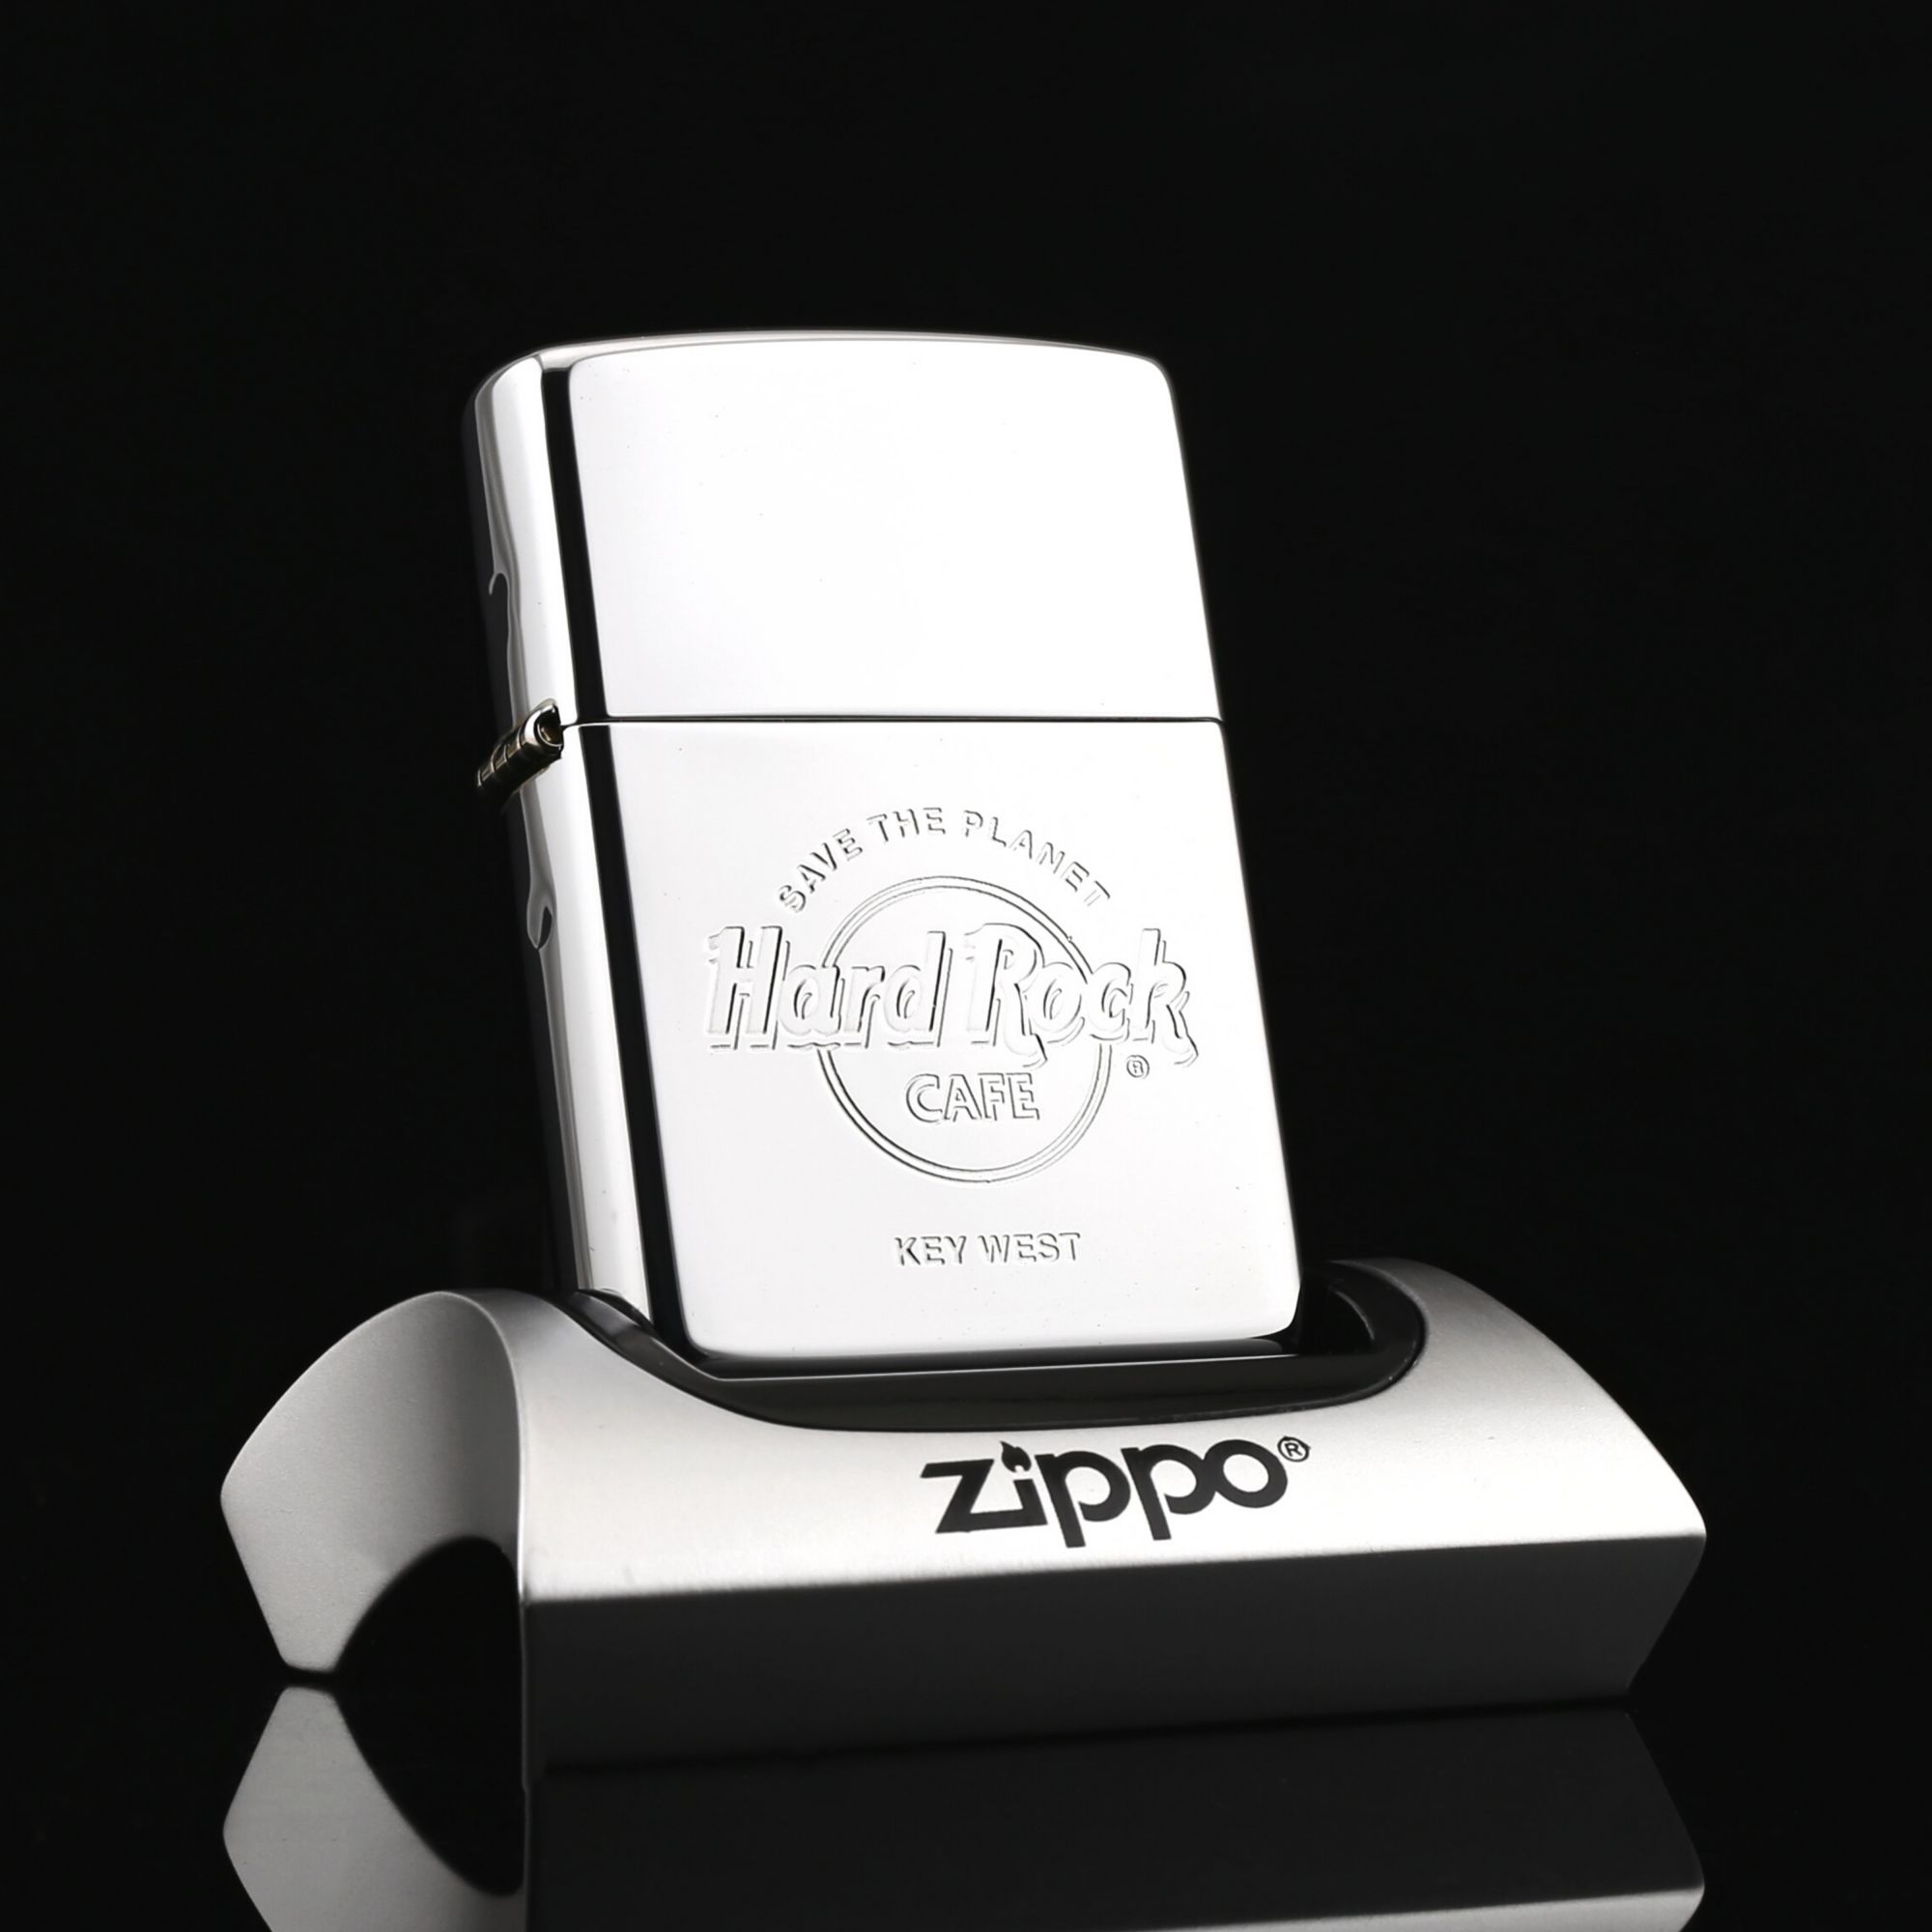 Zippo-HARD-ROCK-CAFE-SAVE-THE-PLANET-KEY-WEST-XVI-2000-zippo-la-ma-quy-hiem